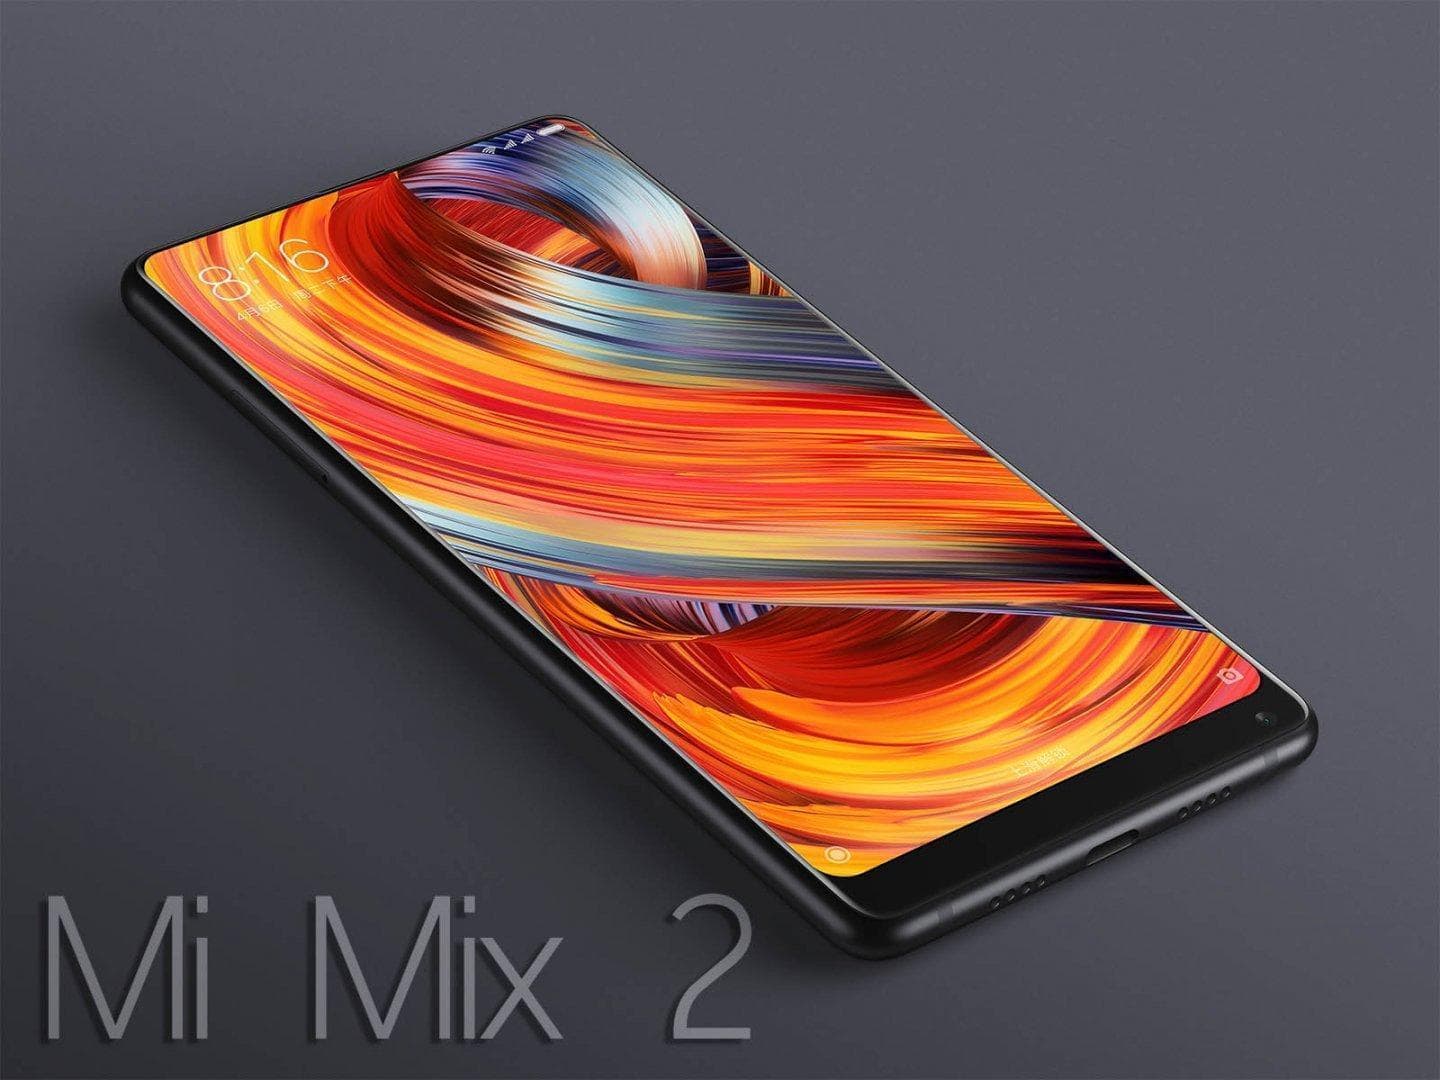 Adquiere el Xiaomi Mi Mix 2 a un precio increíble gracias a LightInTheBox